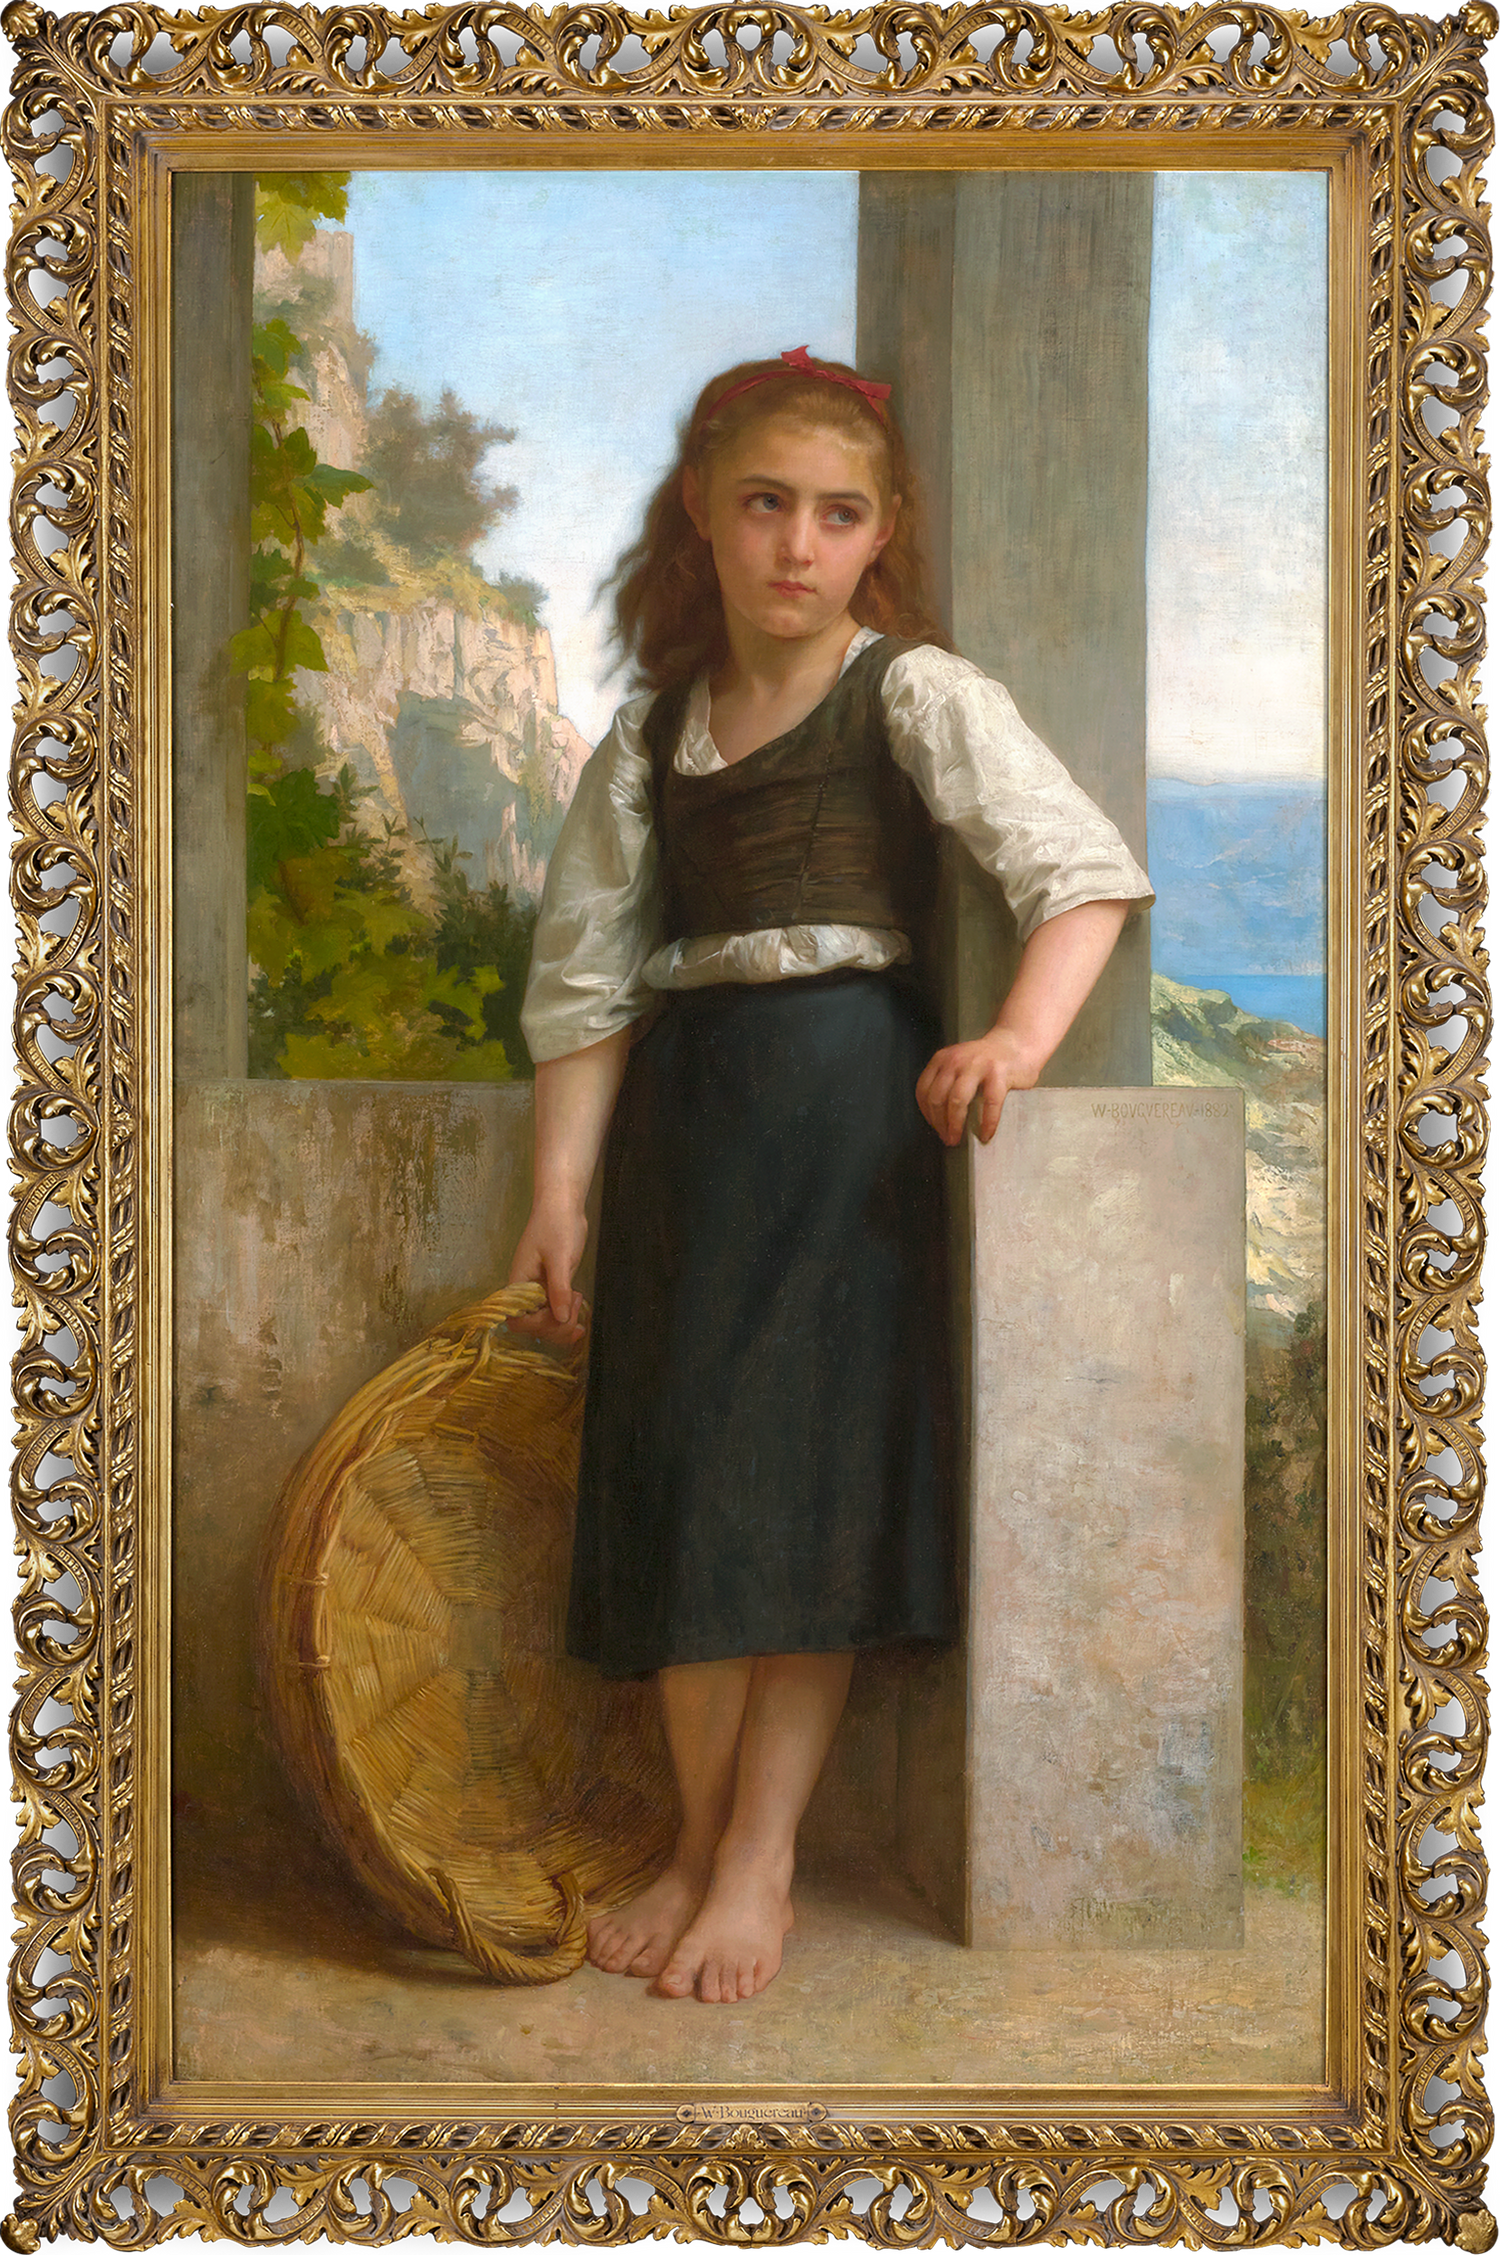 La fille du pêcheur by William Bouguereau